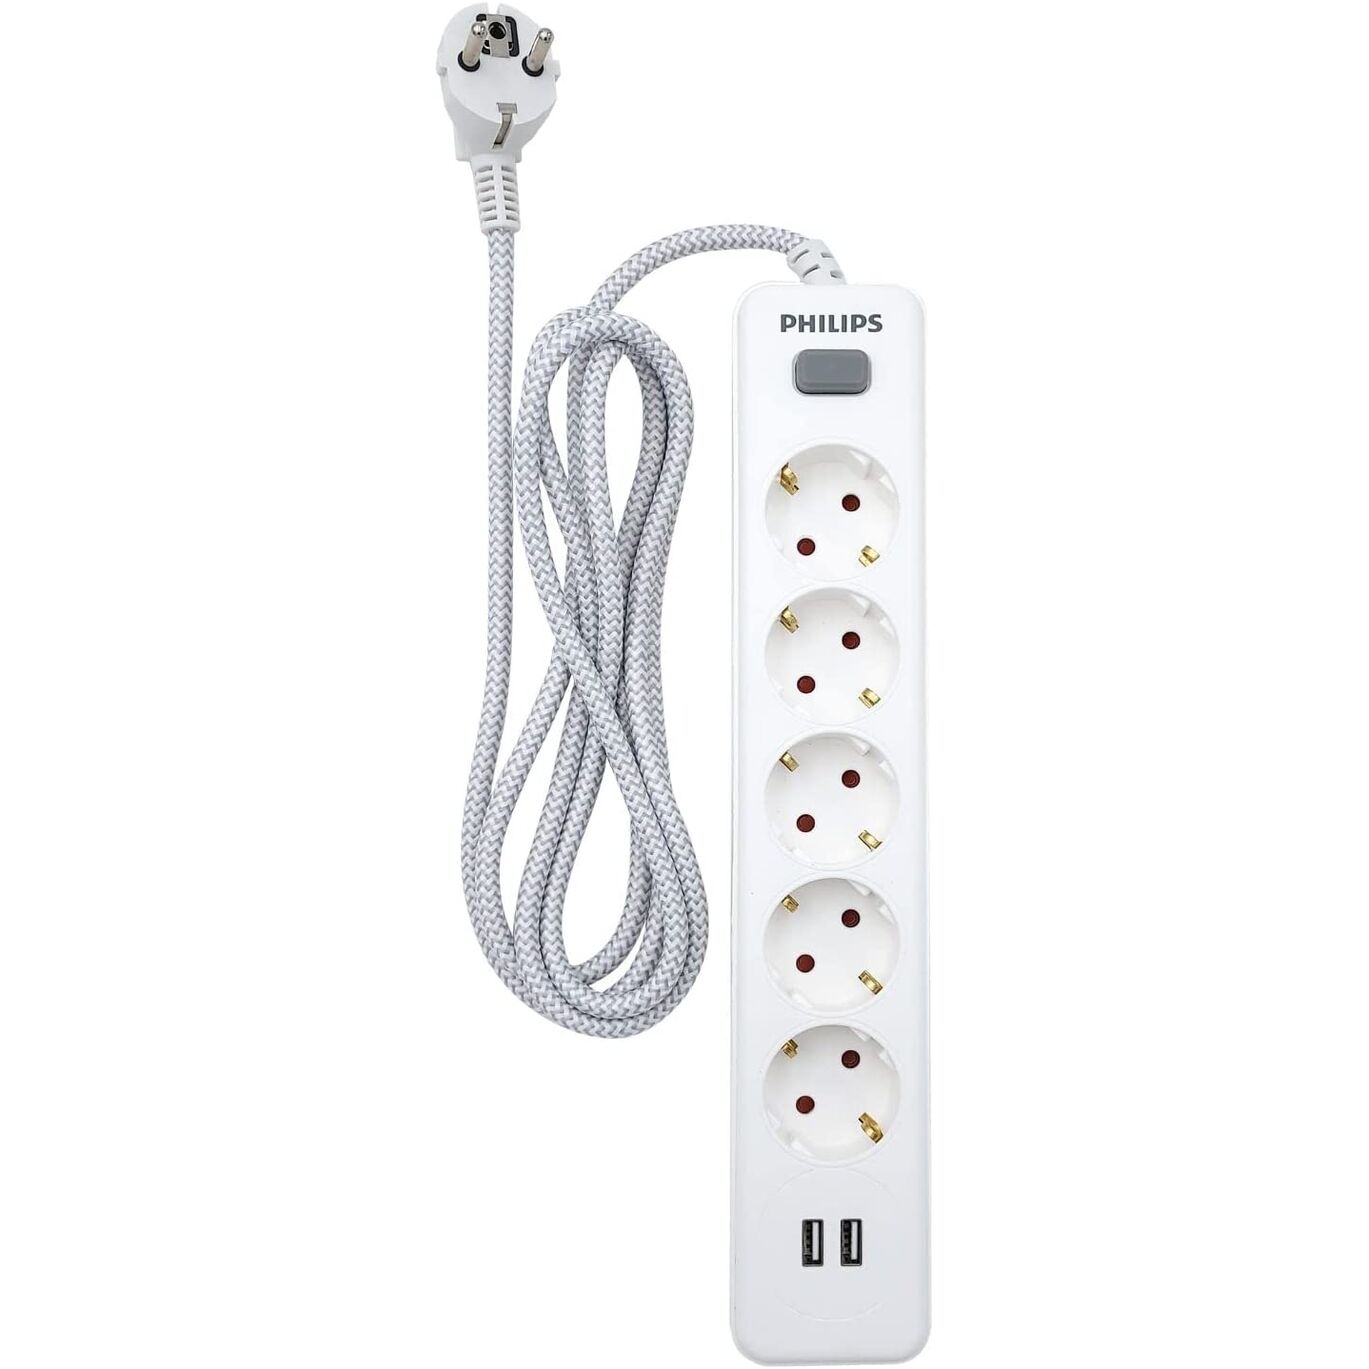 Regleta de 5 Enchufes Schuko y 2 Puertos USB de 2,4A, Interruptor Encendido/Apagado, Cable de Alimentacin Trenzado 1,5 Metros  - Color Blanco Philips